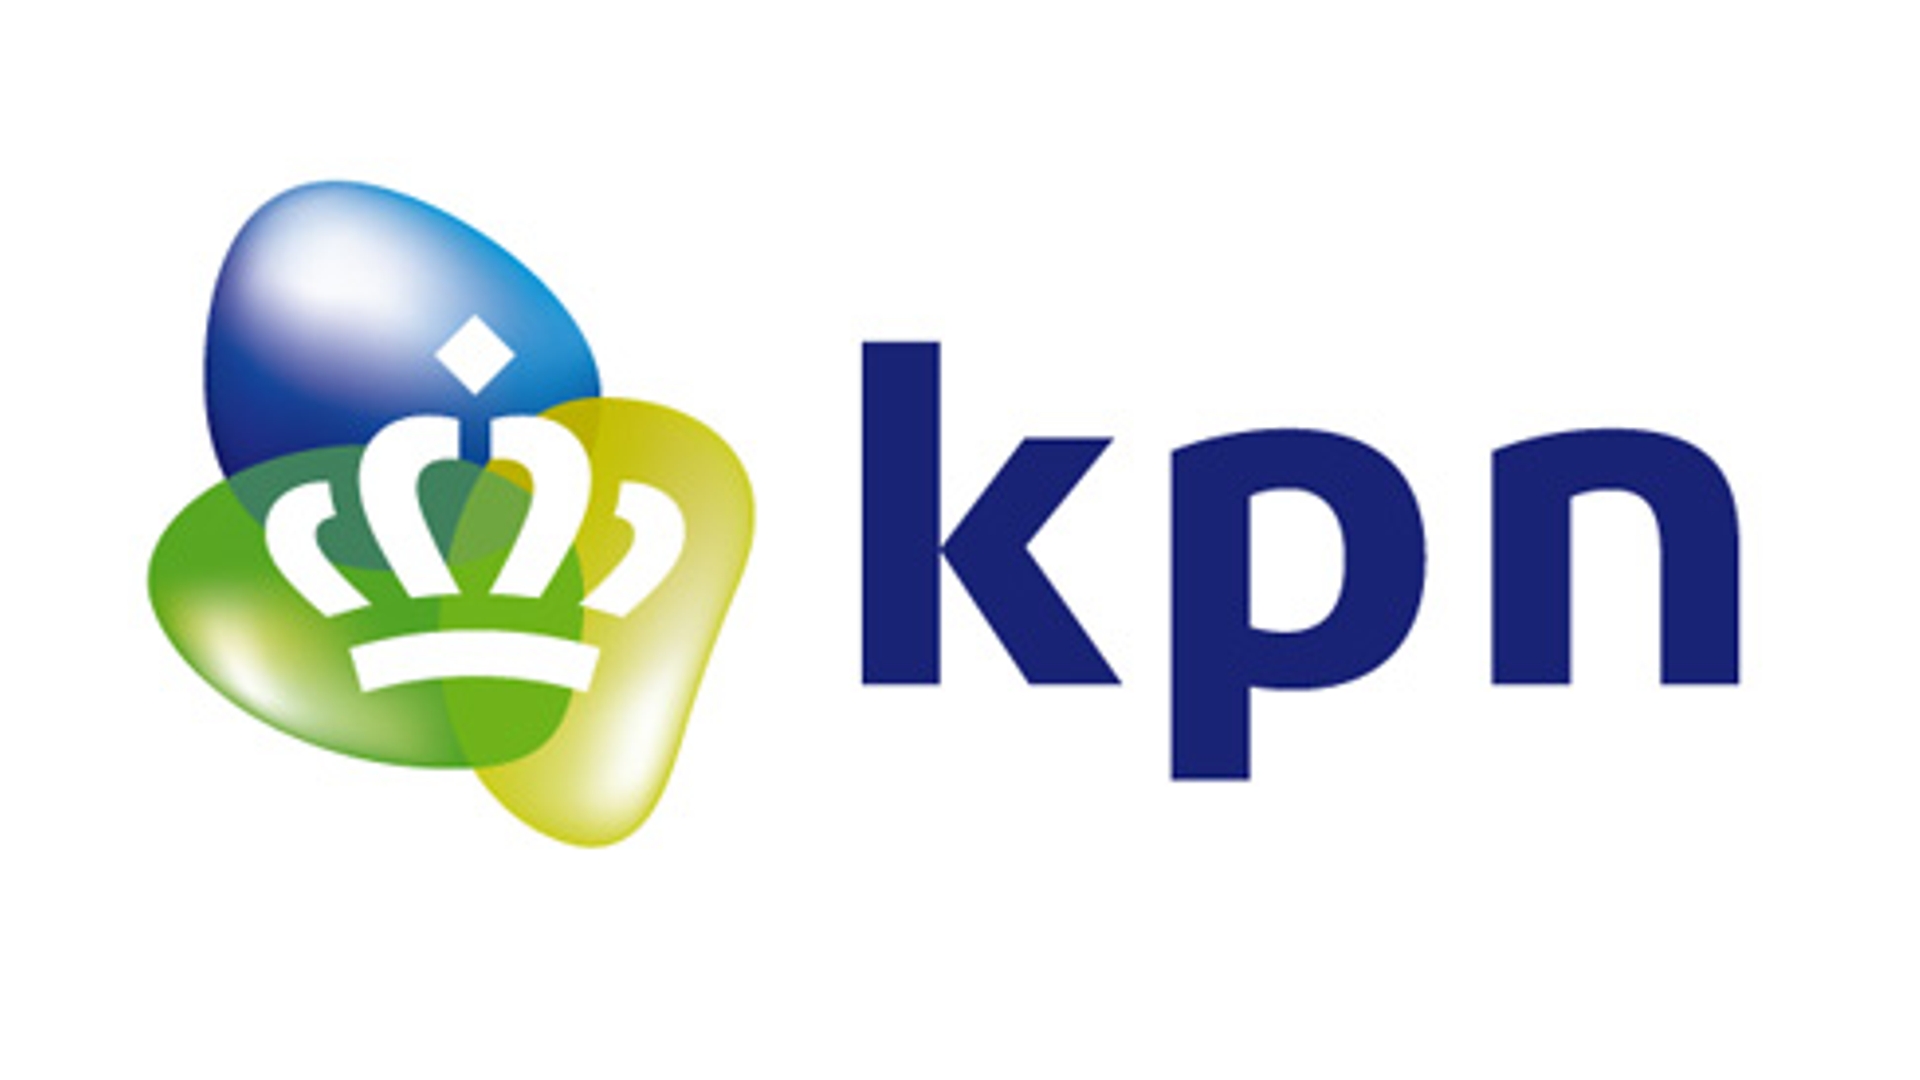 logo_kpn_01.jpg